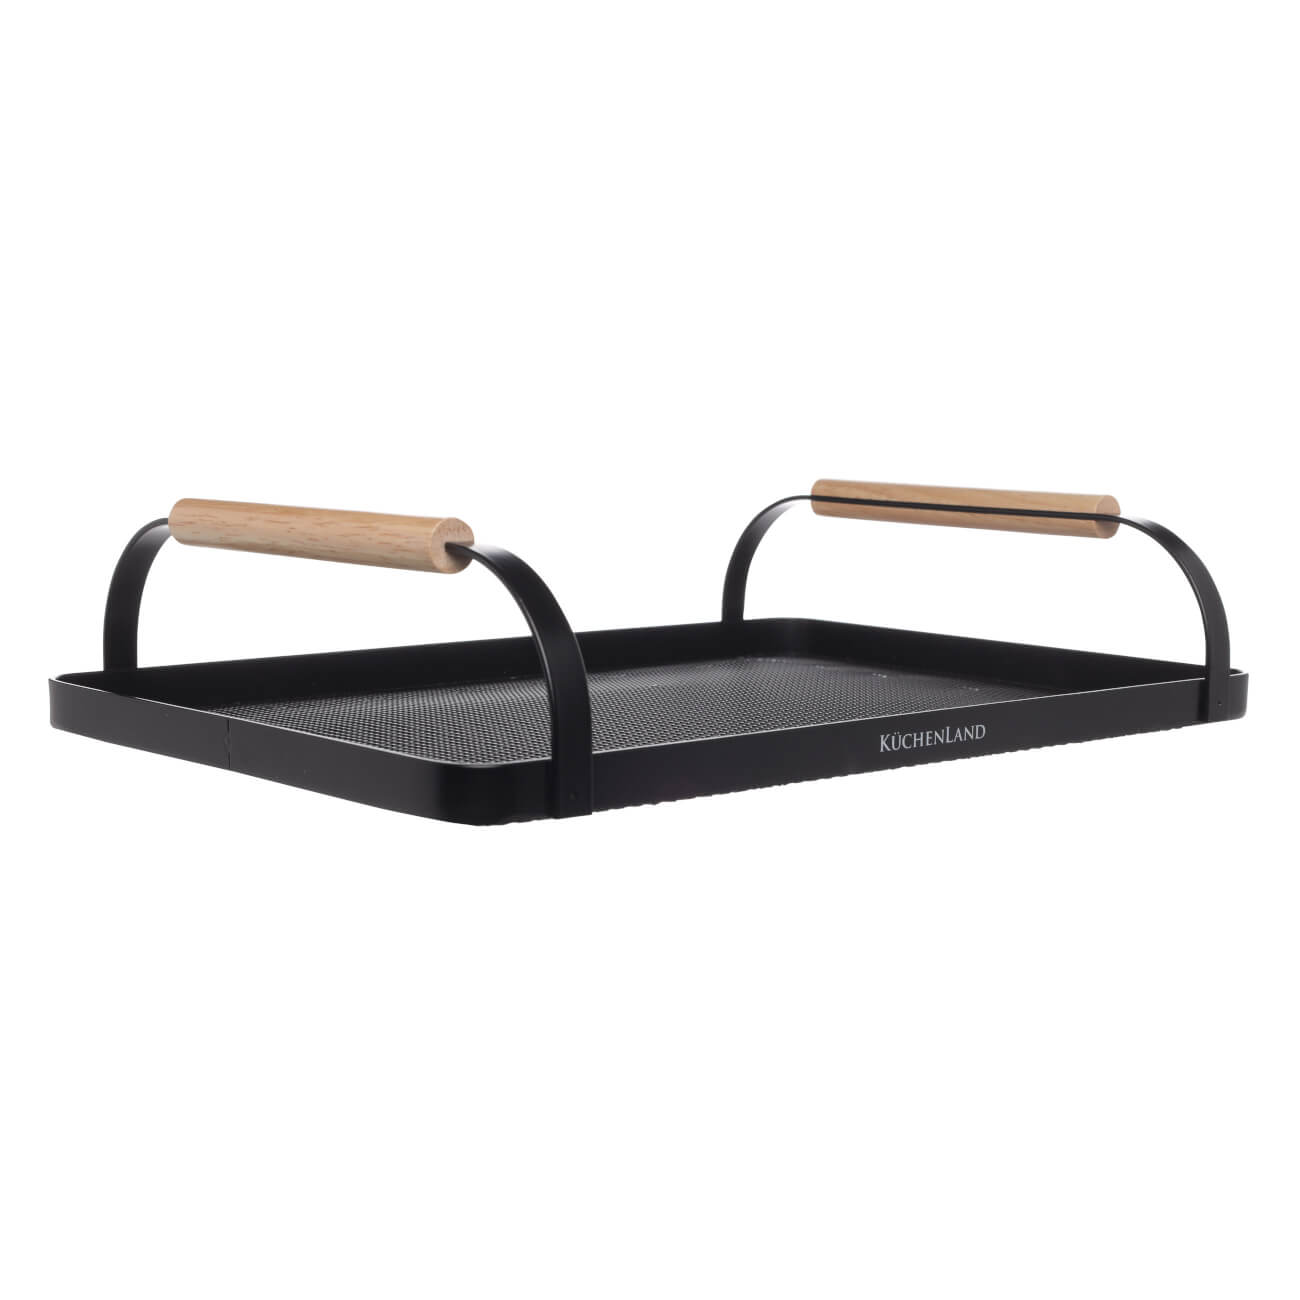 Поднос, 33х23 см, с ручками, металл/дерево, прямоугольный, черный, Black style ложка для обуви 30×5 см металл